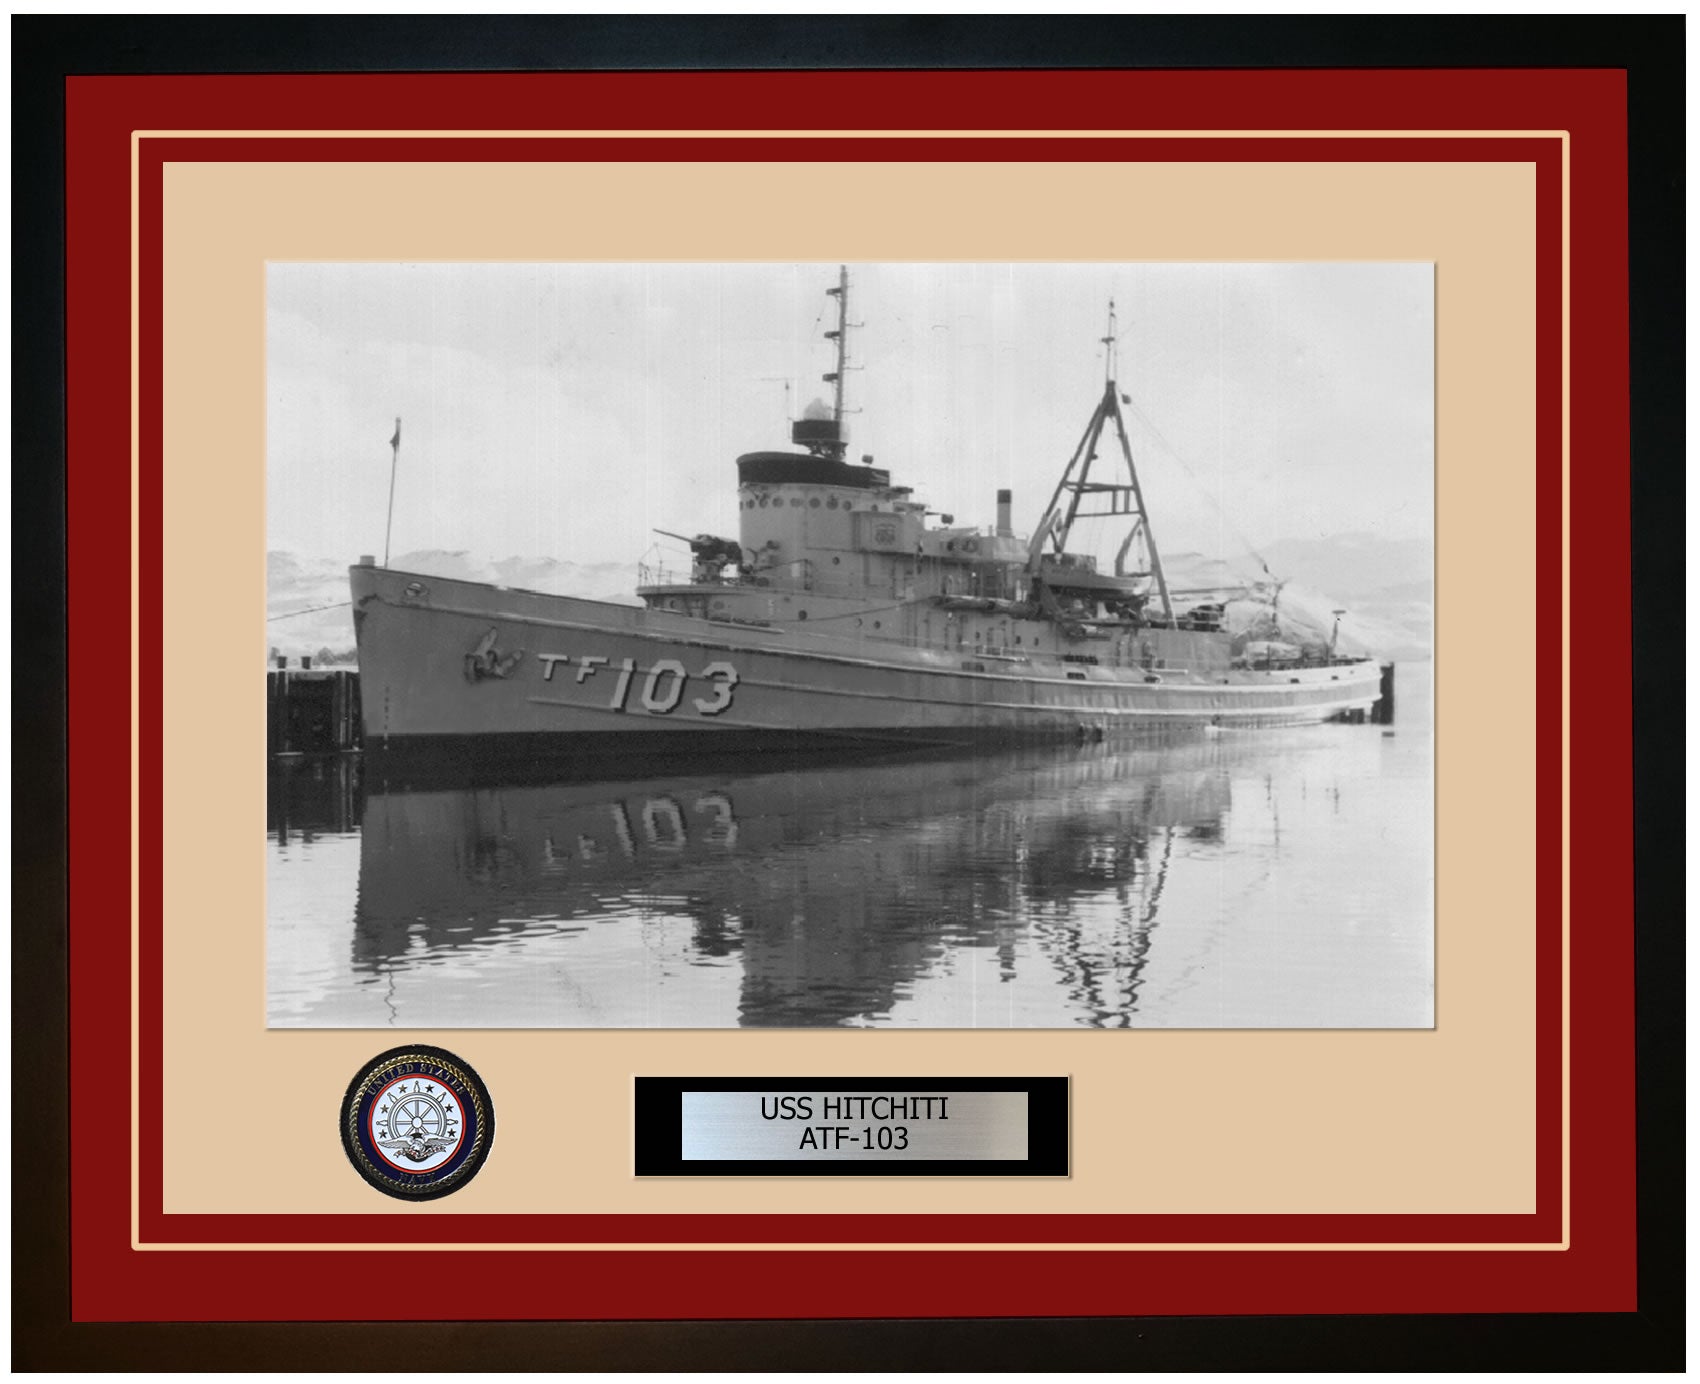 USS HITCHITI ATF-103 Framed Navy Ship Photo Burgundy